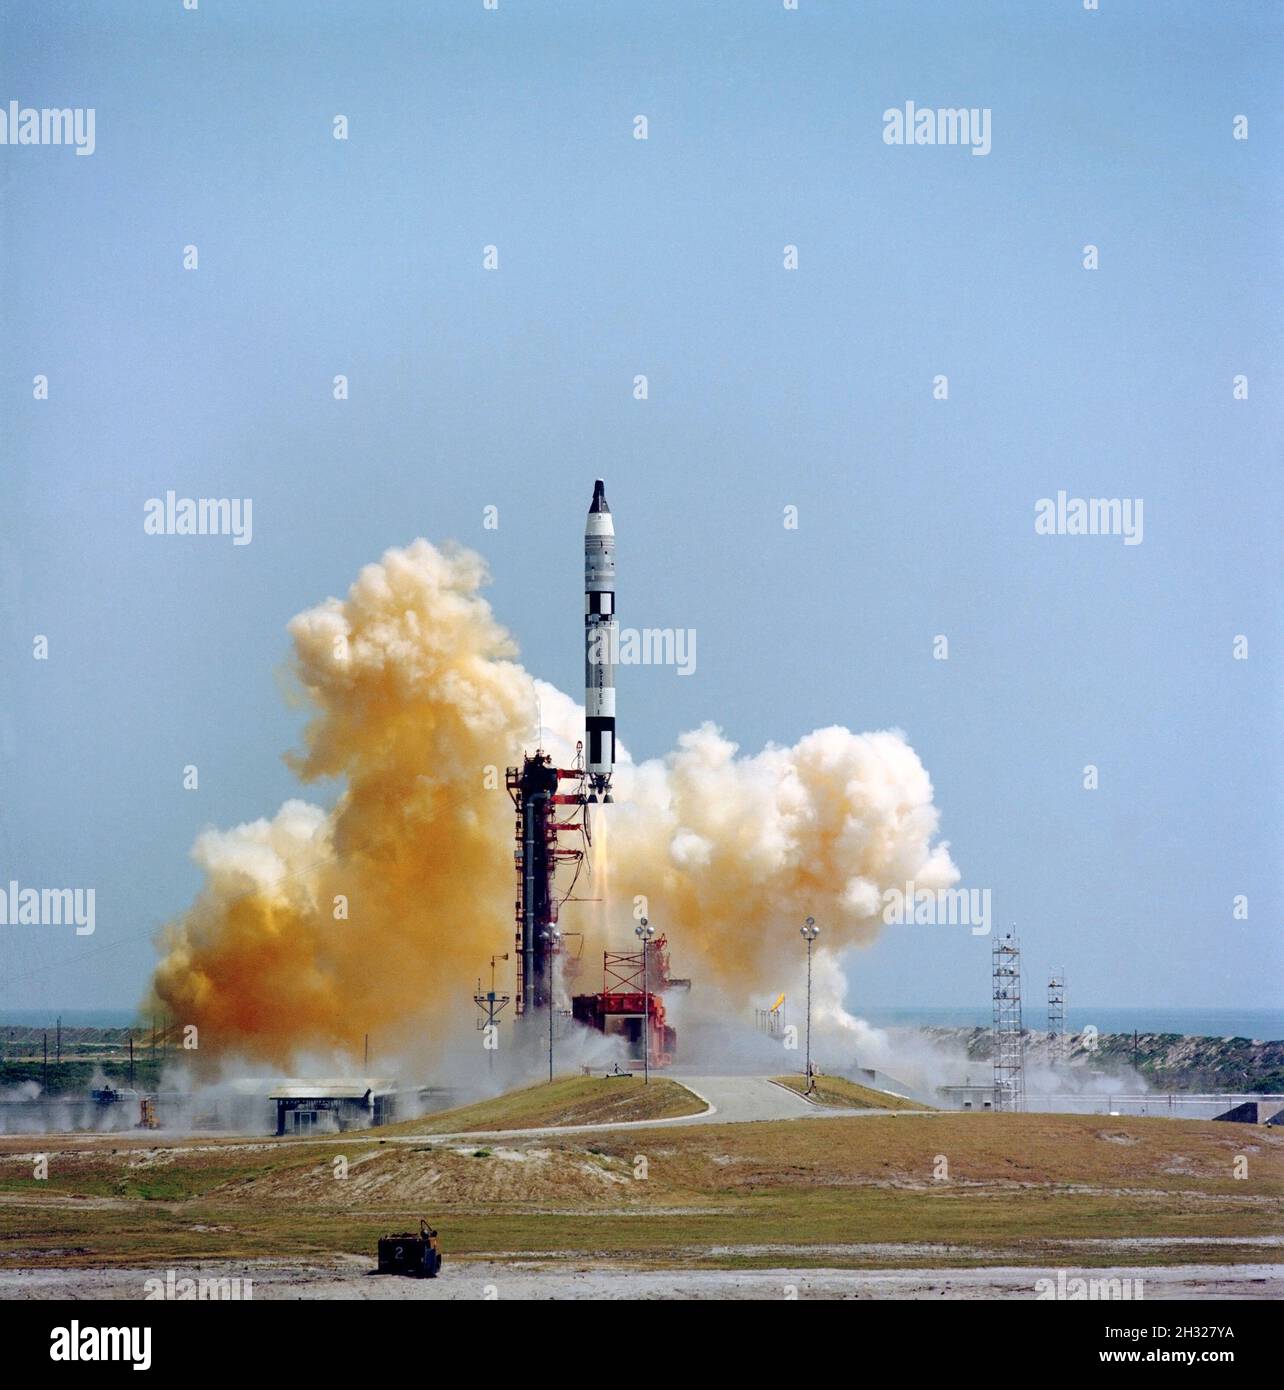 (3 giugno 1965) --- il Gemini-Titan 4 (GT-4) lancia il semaforo spaziale dal Pad 19 di Cape Kennedy alle 10:16 (EST) il 3 giugno 1965. La navicella spaziale GT-4 portava gli astronauti James A. McDivitt, pilota di comando, e Edward H. White II, pilota, in una missione di quattro giorni e 62 giri. Foto Stock